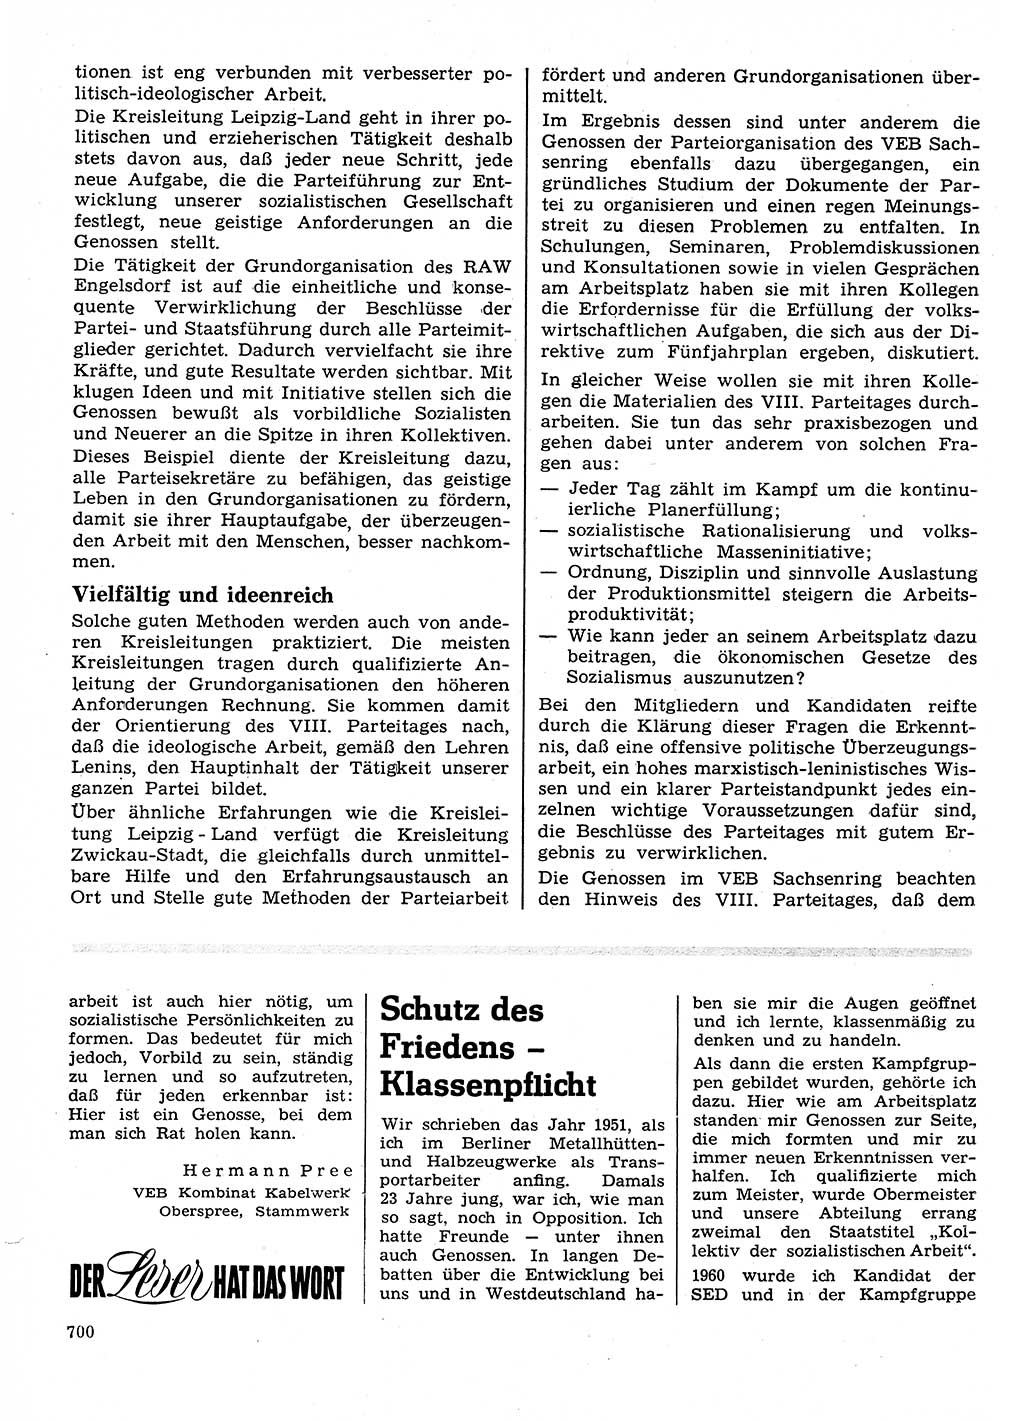 Neuer Weg (NW), Organ des Zentralkomitees (ZK) der SED (Sozialistische Einheitspartei Deutschlands) für Fragen des Parteilebens, 26. Jahrgang [Deutsche Demokratische Republik (DDR)] 1971, Seite 700 (NW ZK SED DDR 1971, S. 700)